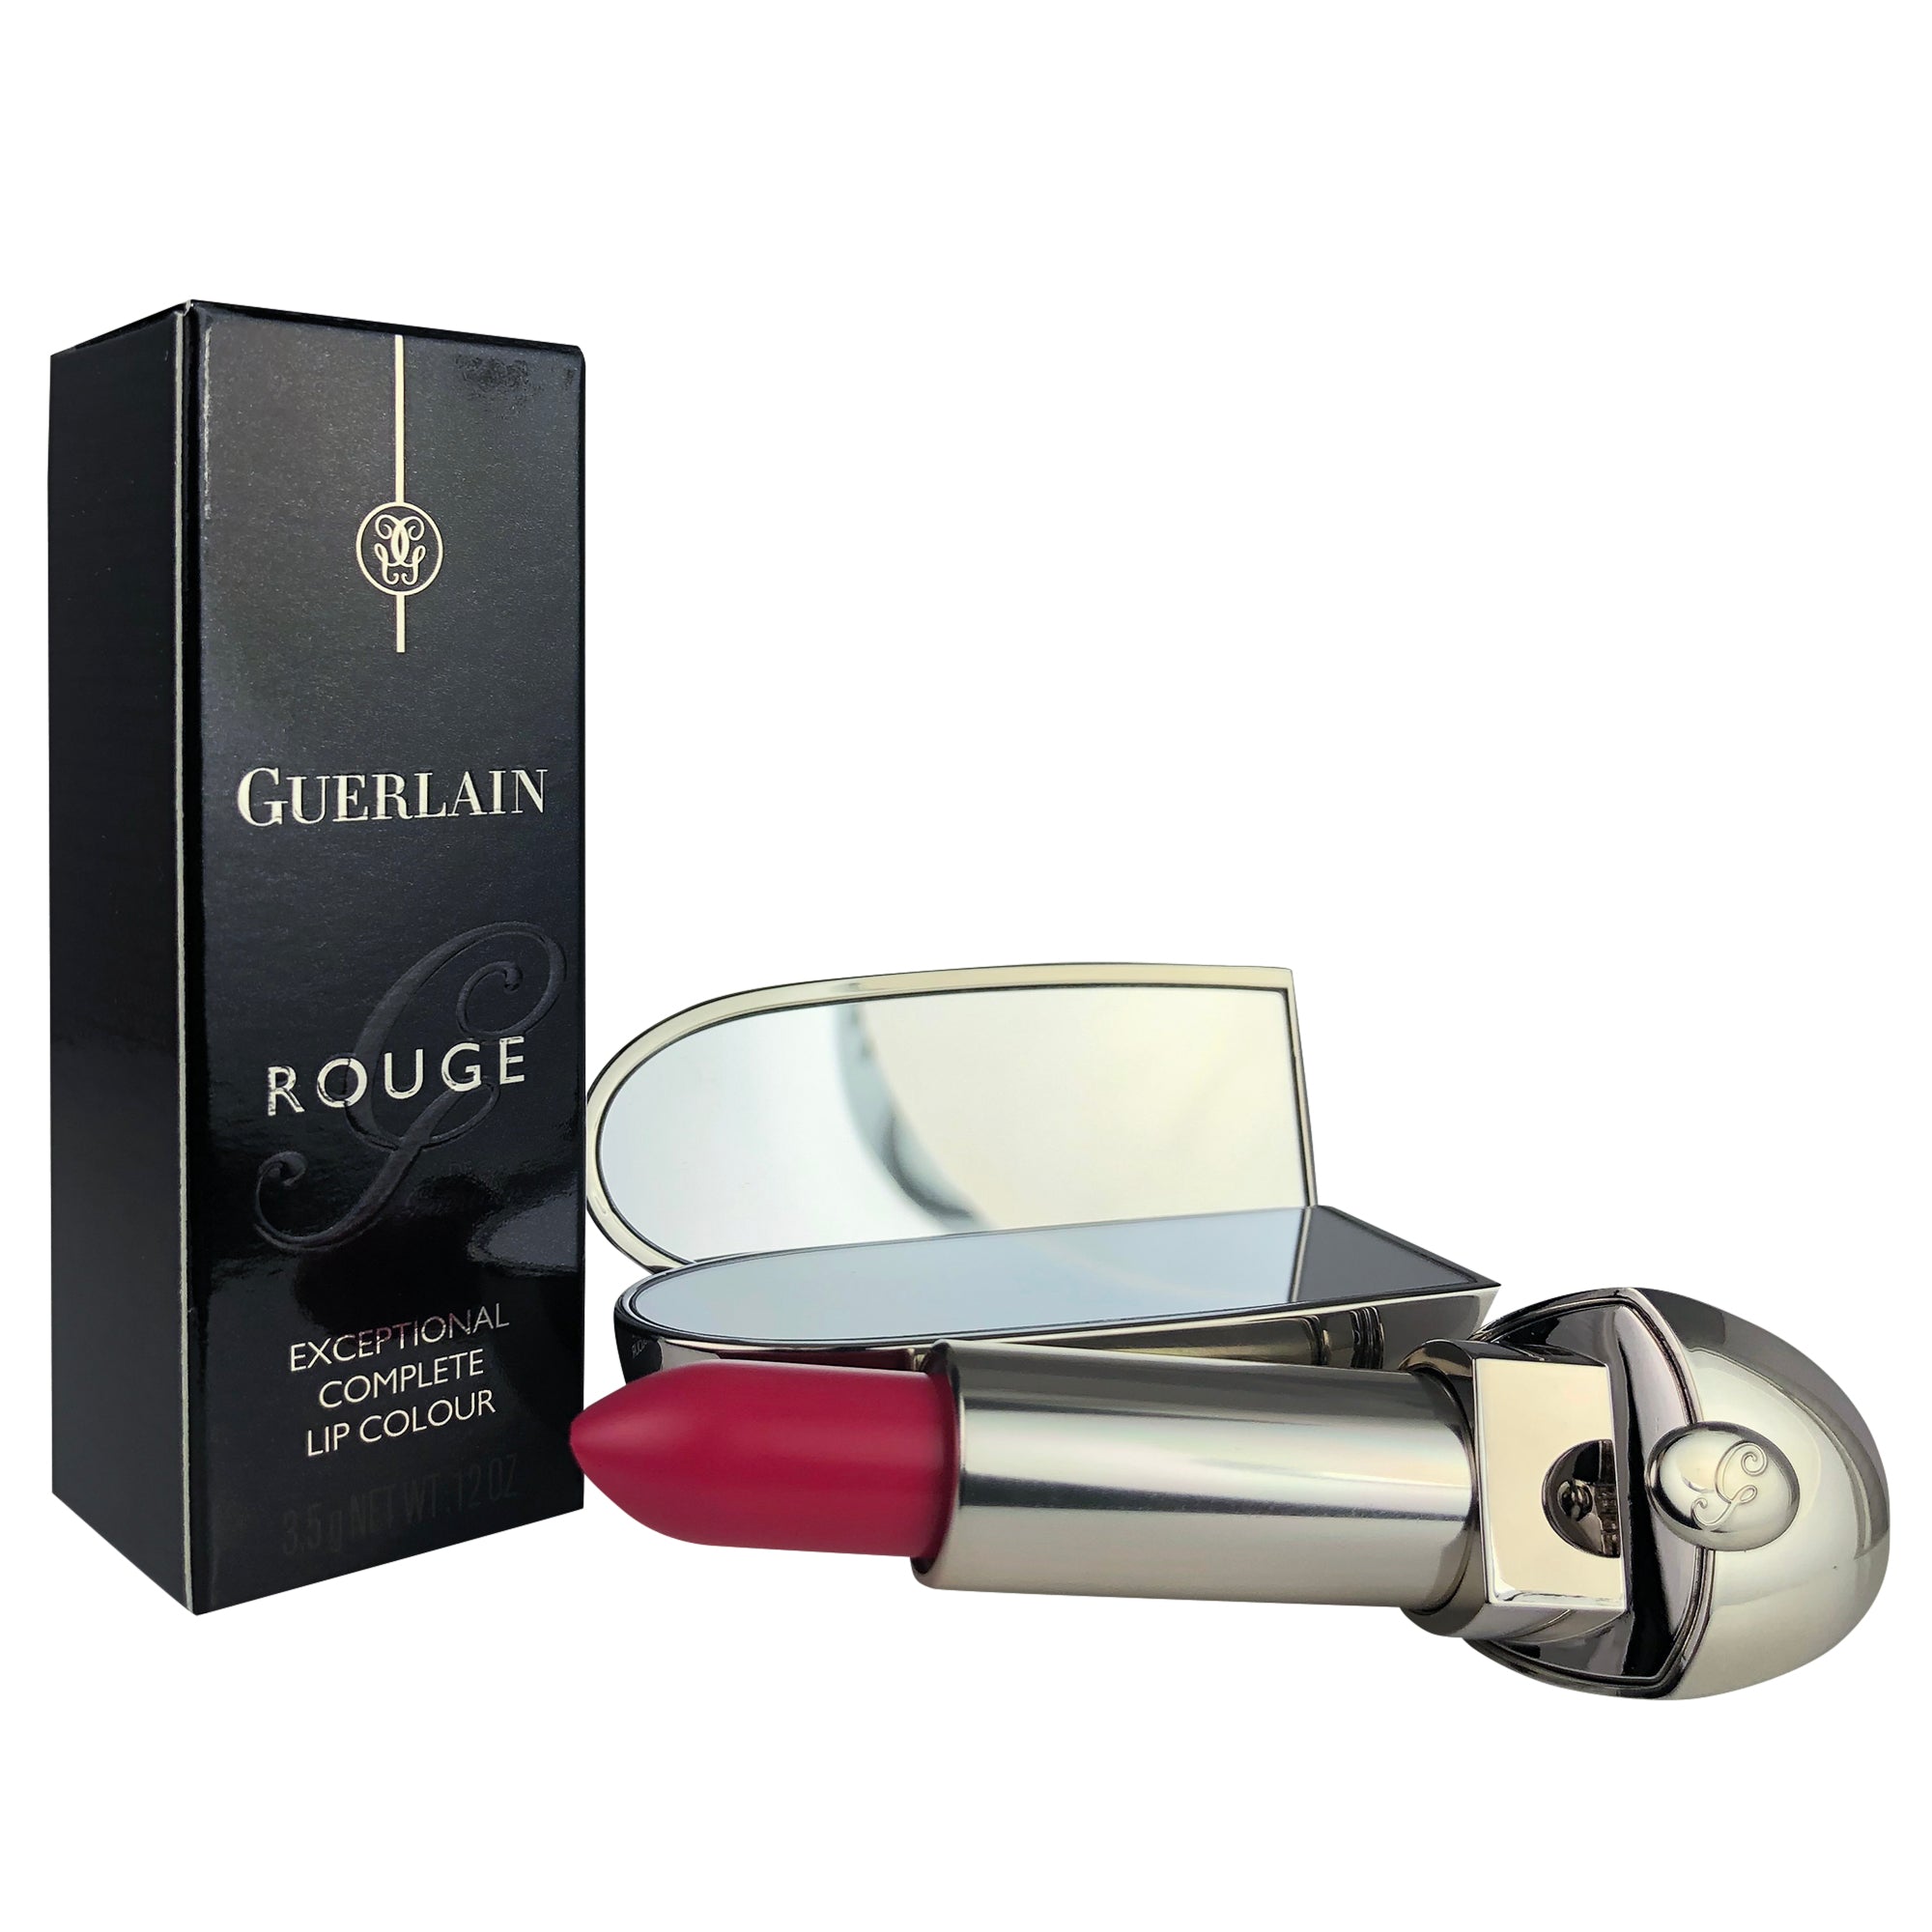 Guerlain Rouge G de Guerlain Exceptional Complete Lip Colour 77 Geraldine